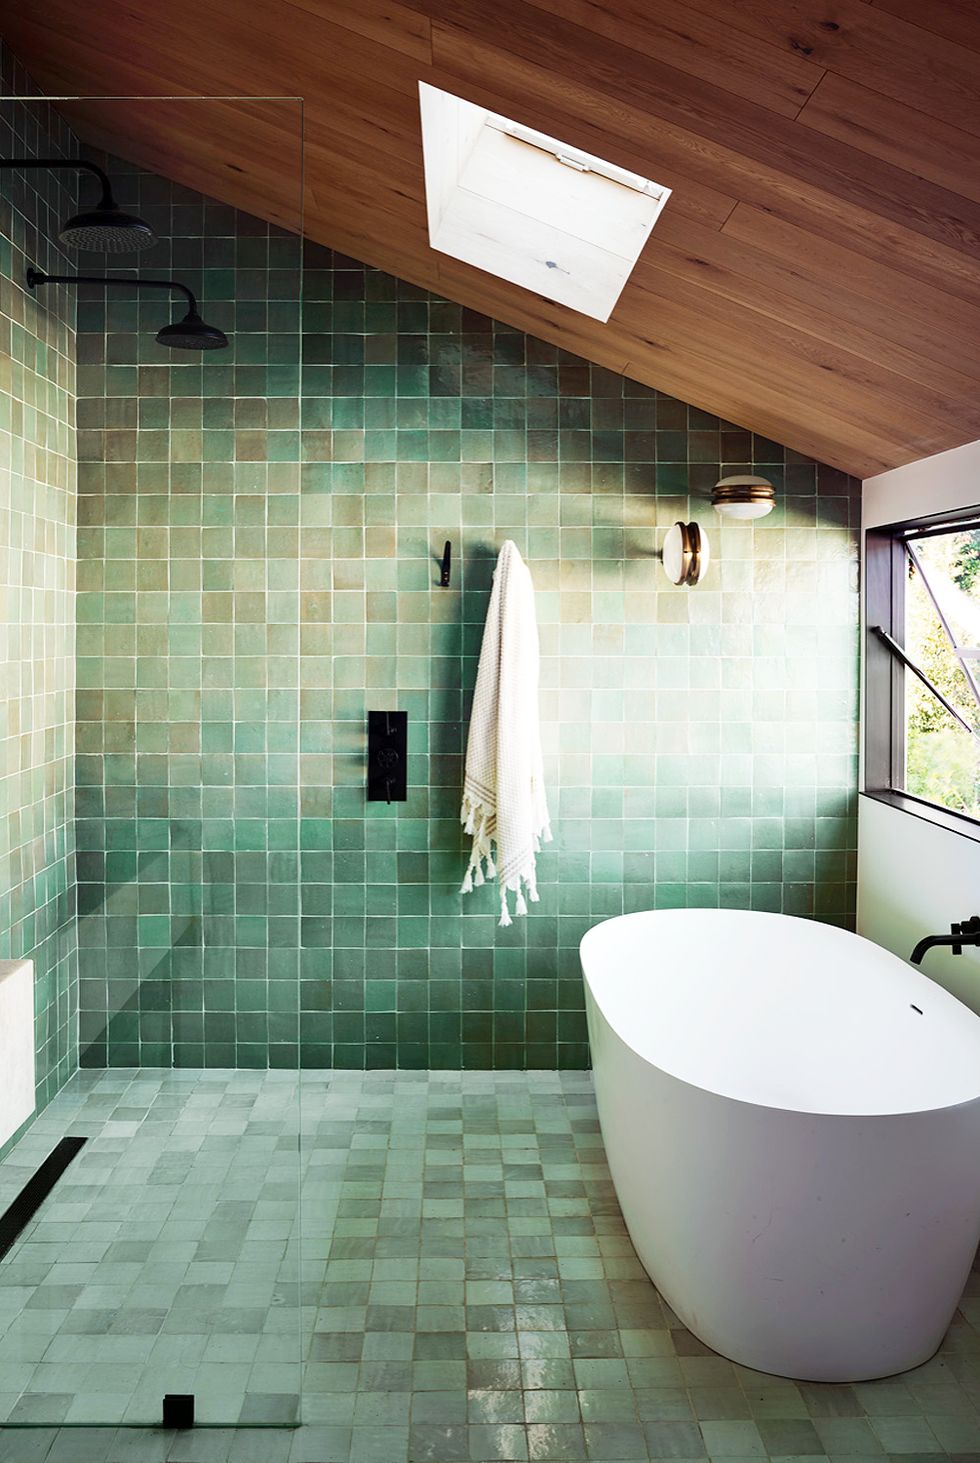 hình ảnh phòng tắm với trần gỗ, tường và sàn ốp gạch màu xanh lá, cửa sổ kính trong suốt, bồn tắm đặt cạnh cửa sổ